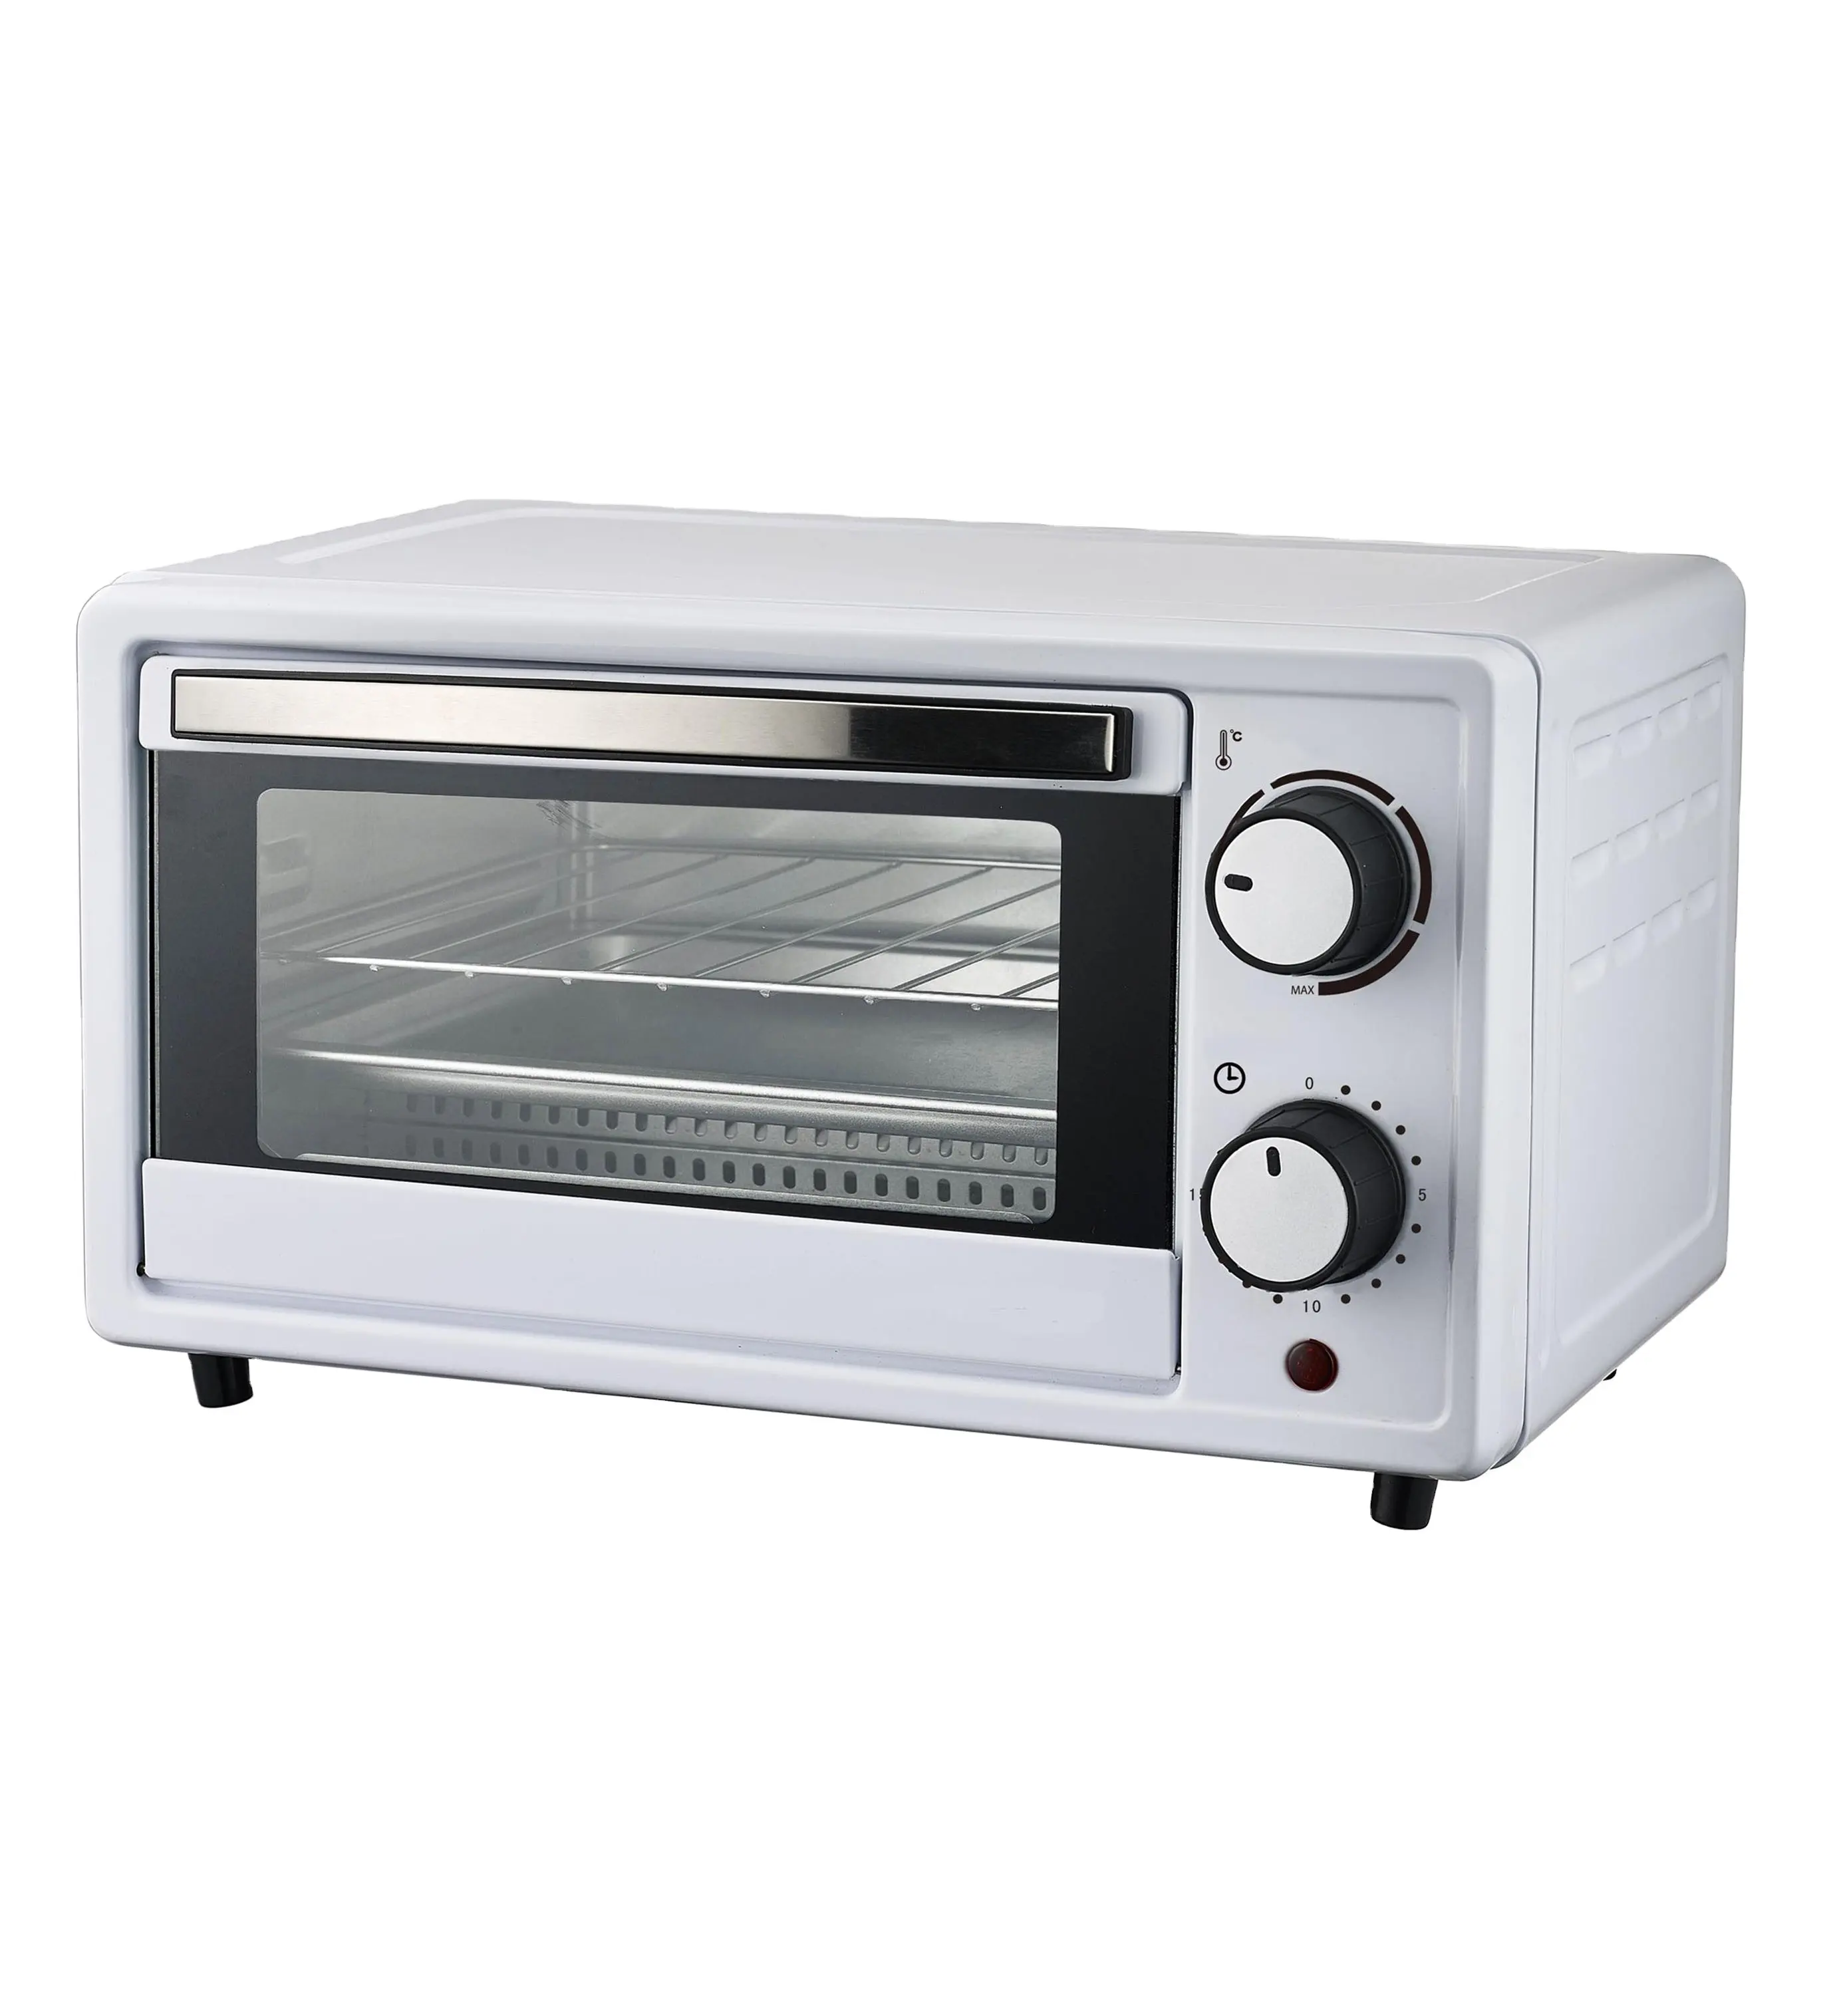 EO-509A ambel casa vendas mini forno elétrico, assar forno aparelhos de cozinha forno elétrico para assar